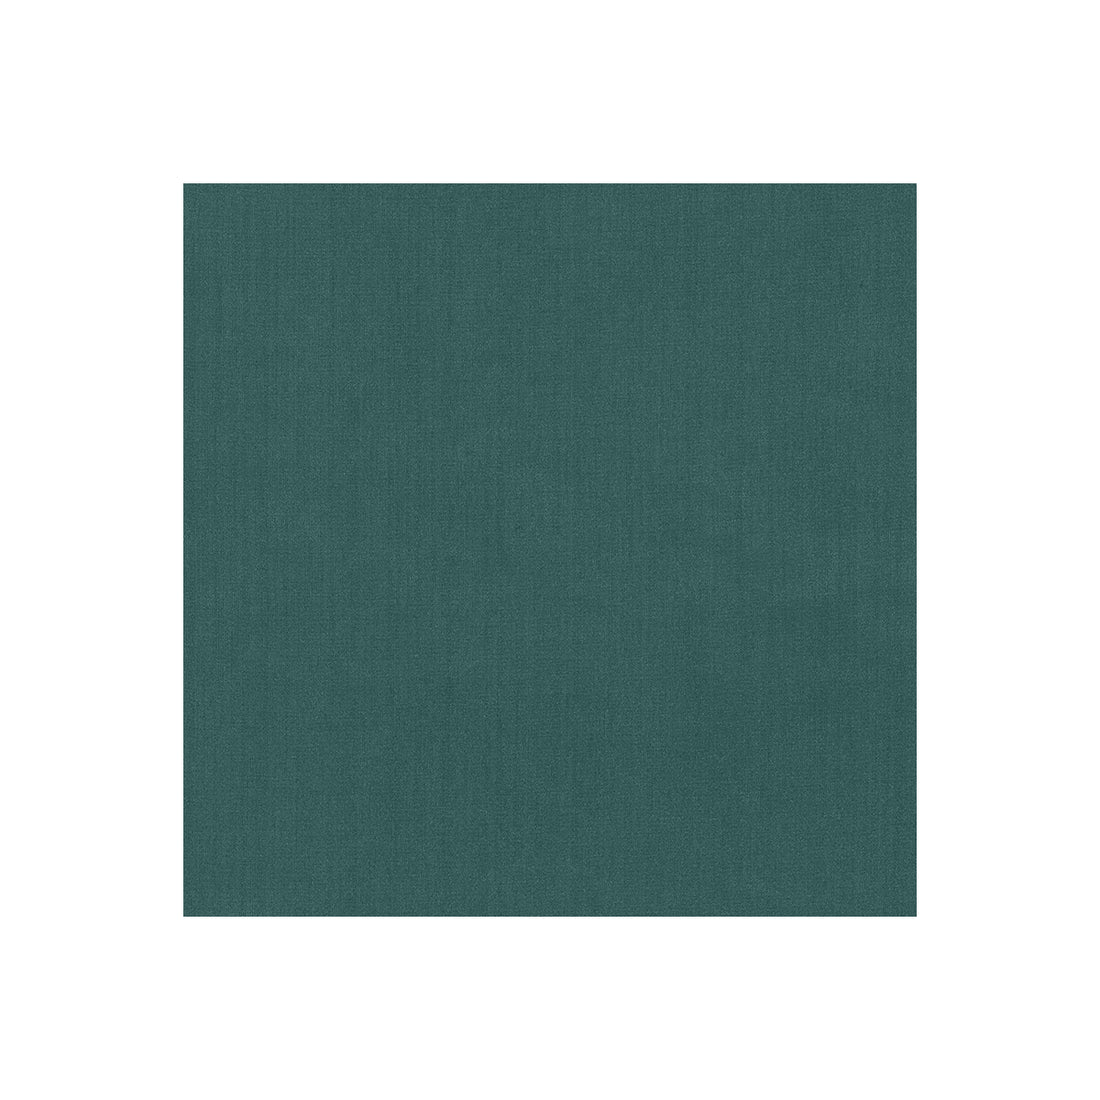 Kravet Basics fabric in 35916-35 color - pattern 35916.35.0 - by Kravet Basics